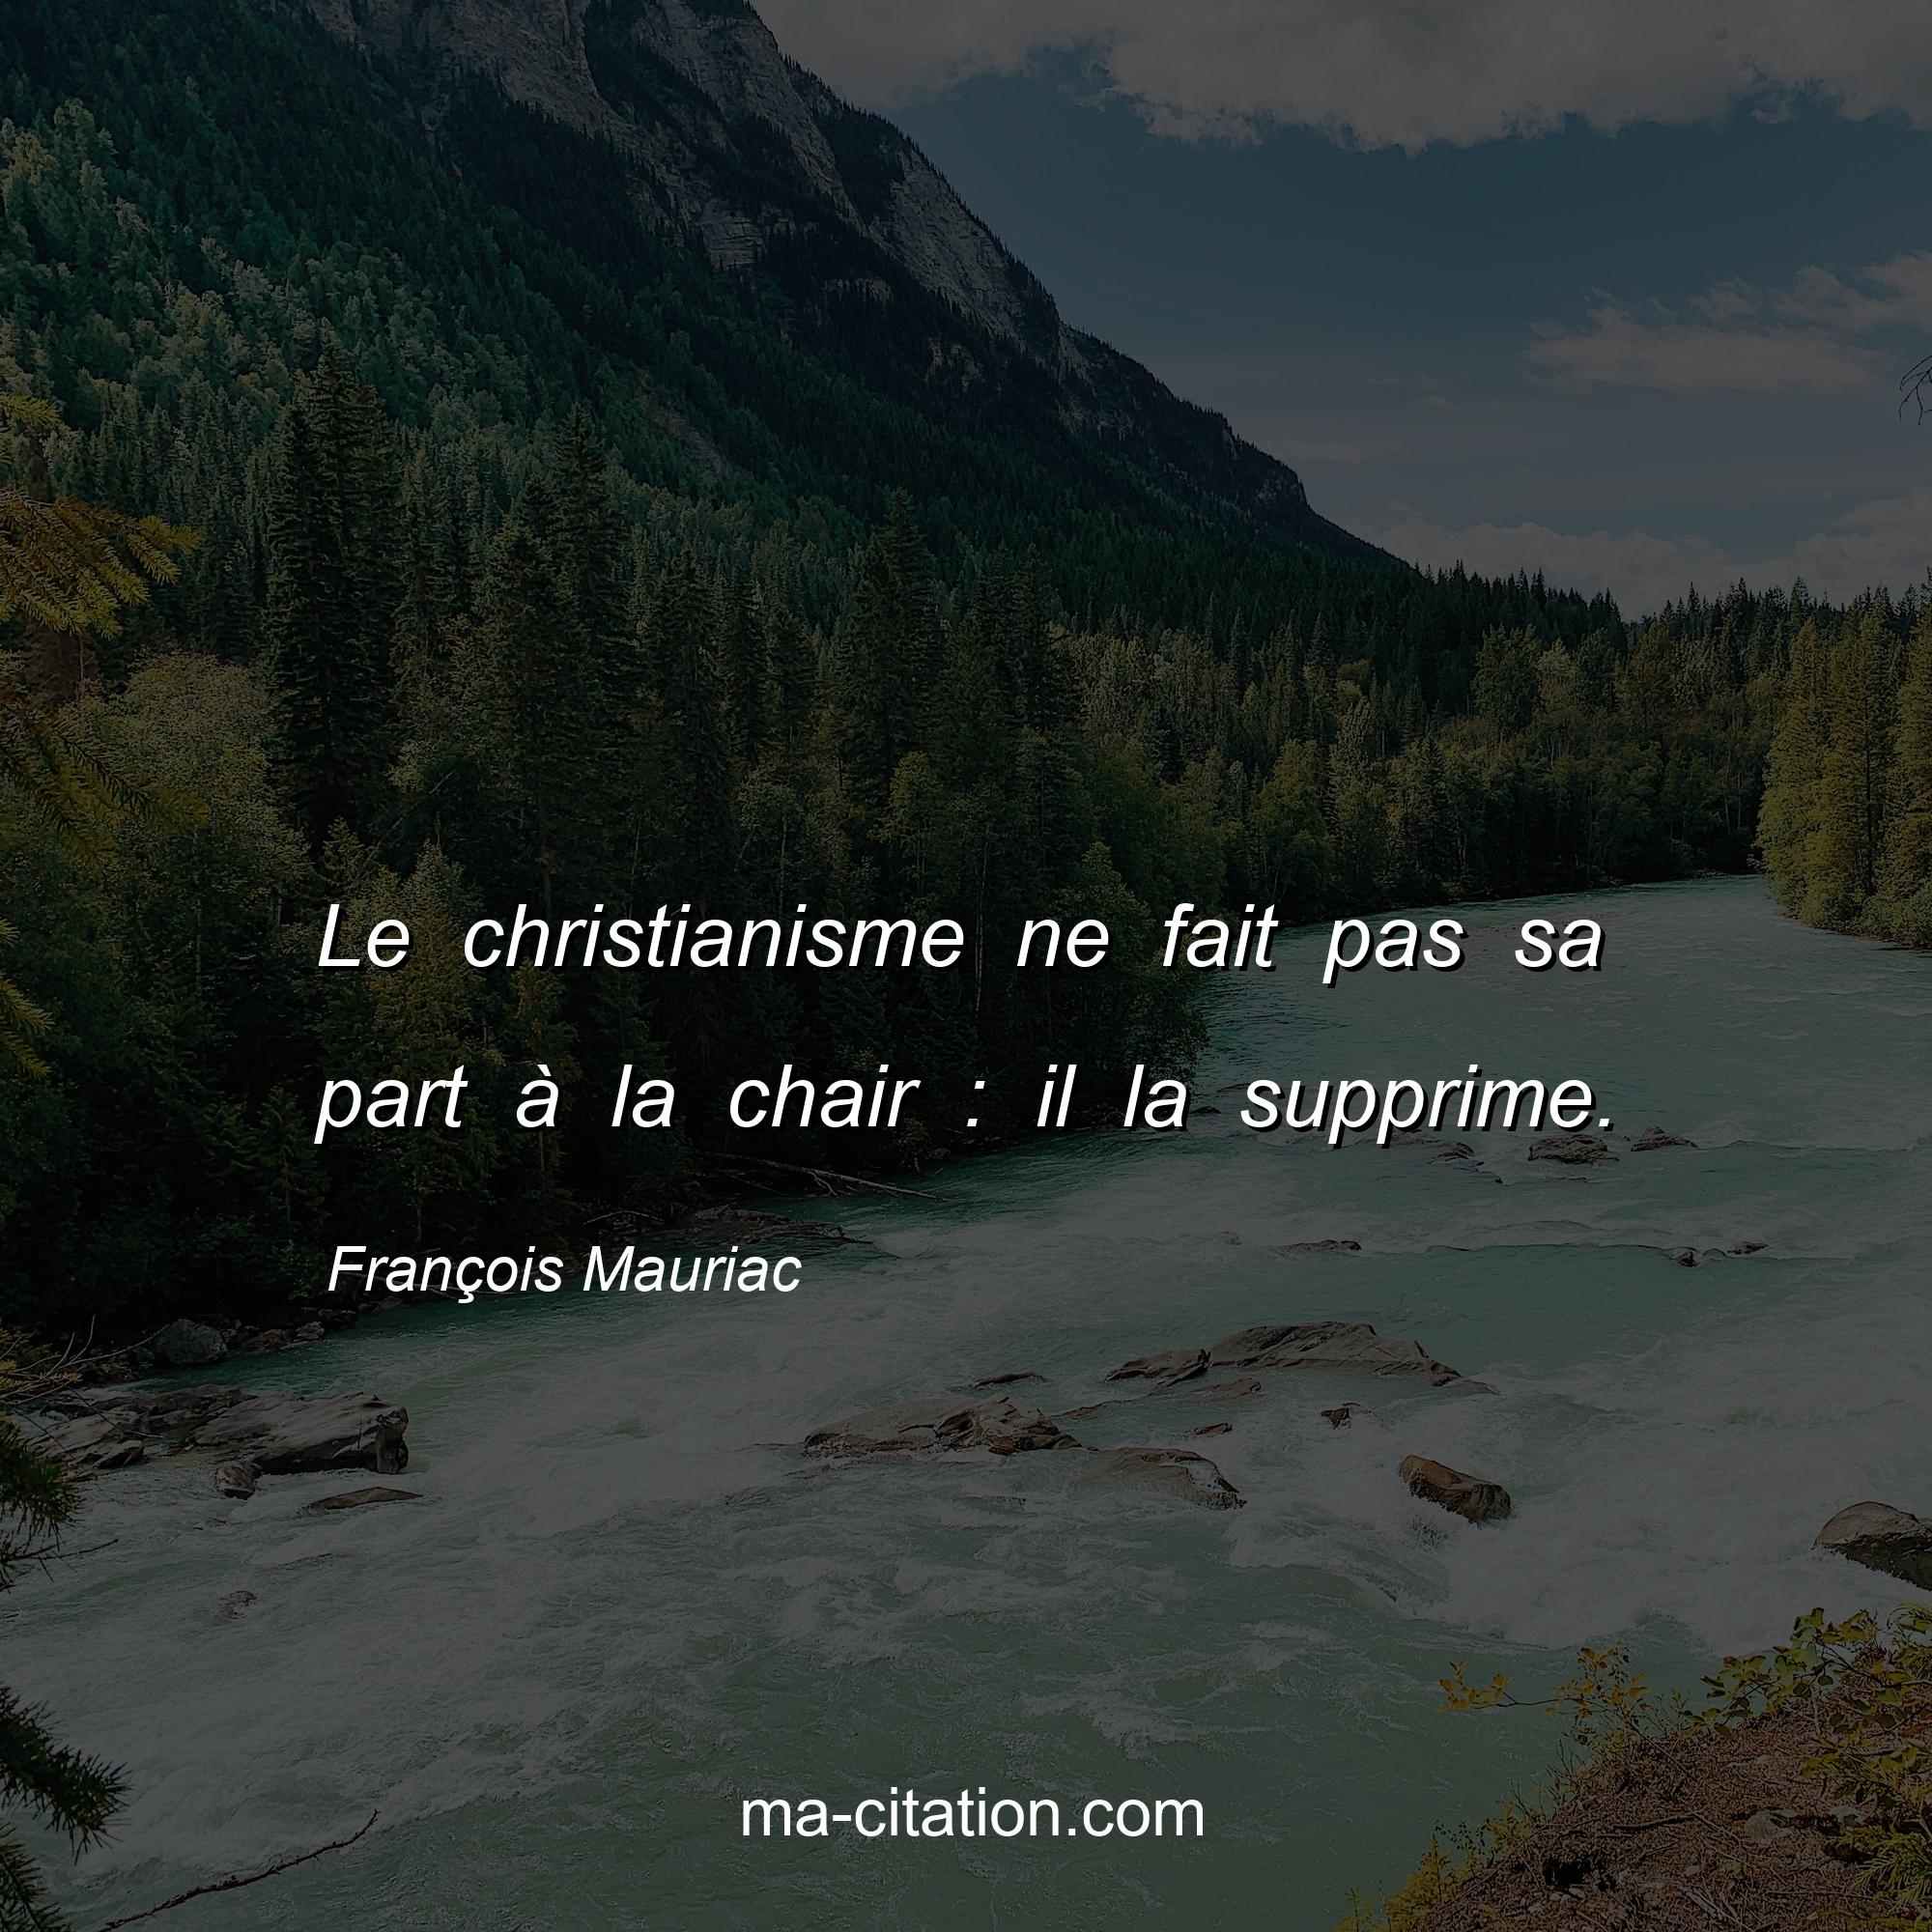 François Mauriac : Le christianisme ne fait pas sa part à la chair : il la supprime.